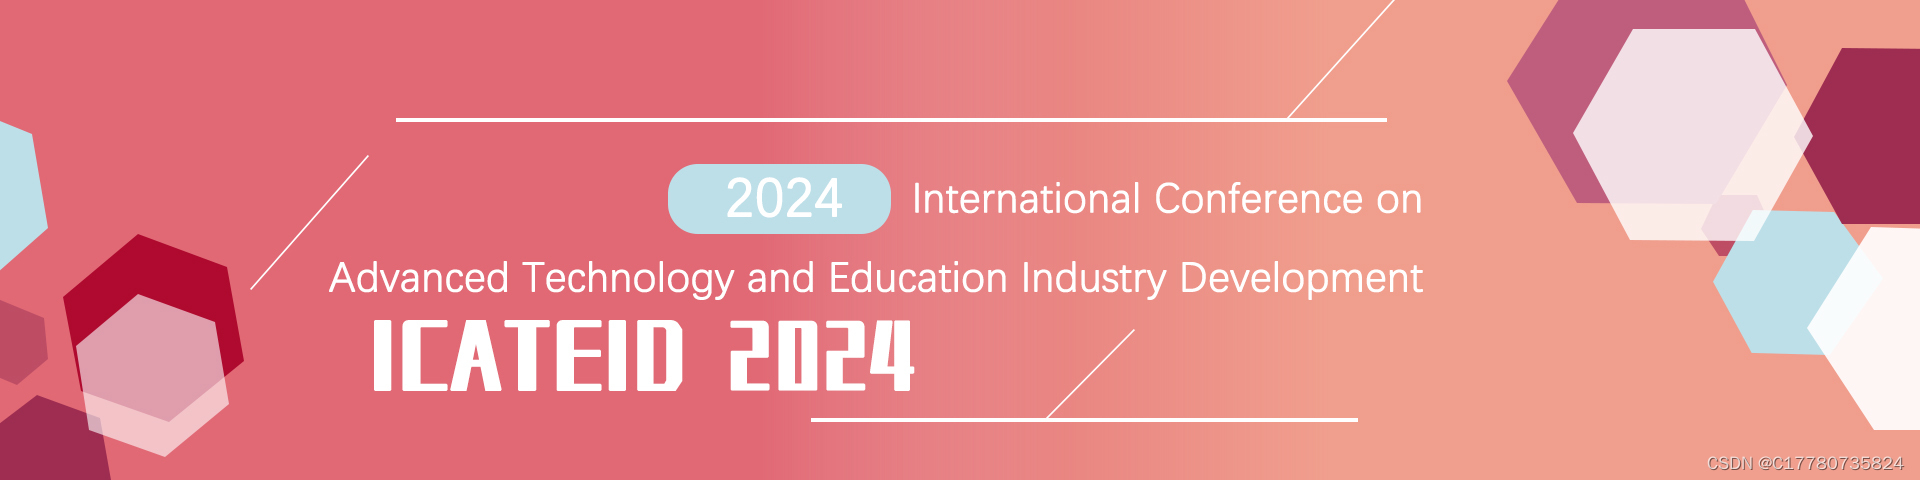 【投稿优惠|优质会议】2024年先进技术与教育行业发展国际学术会议（ICATEID 2024）